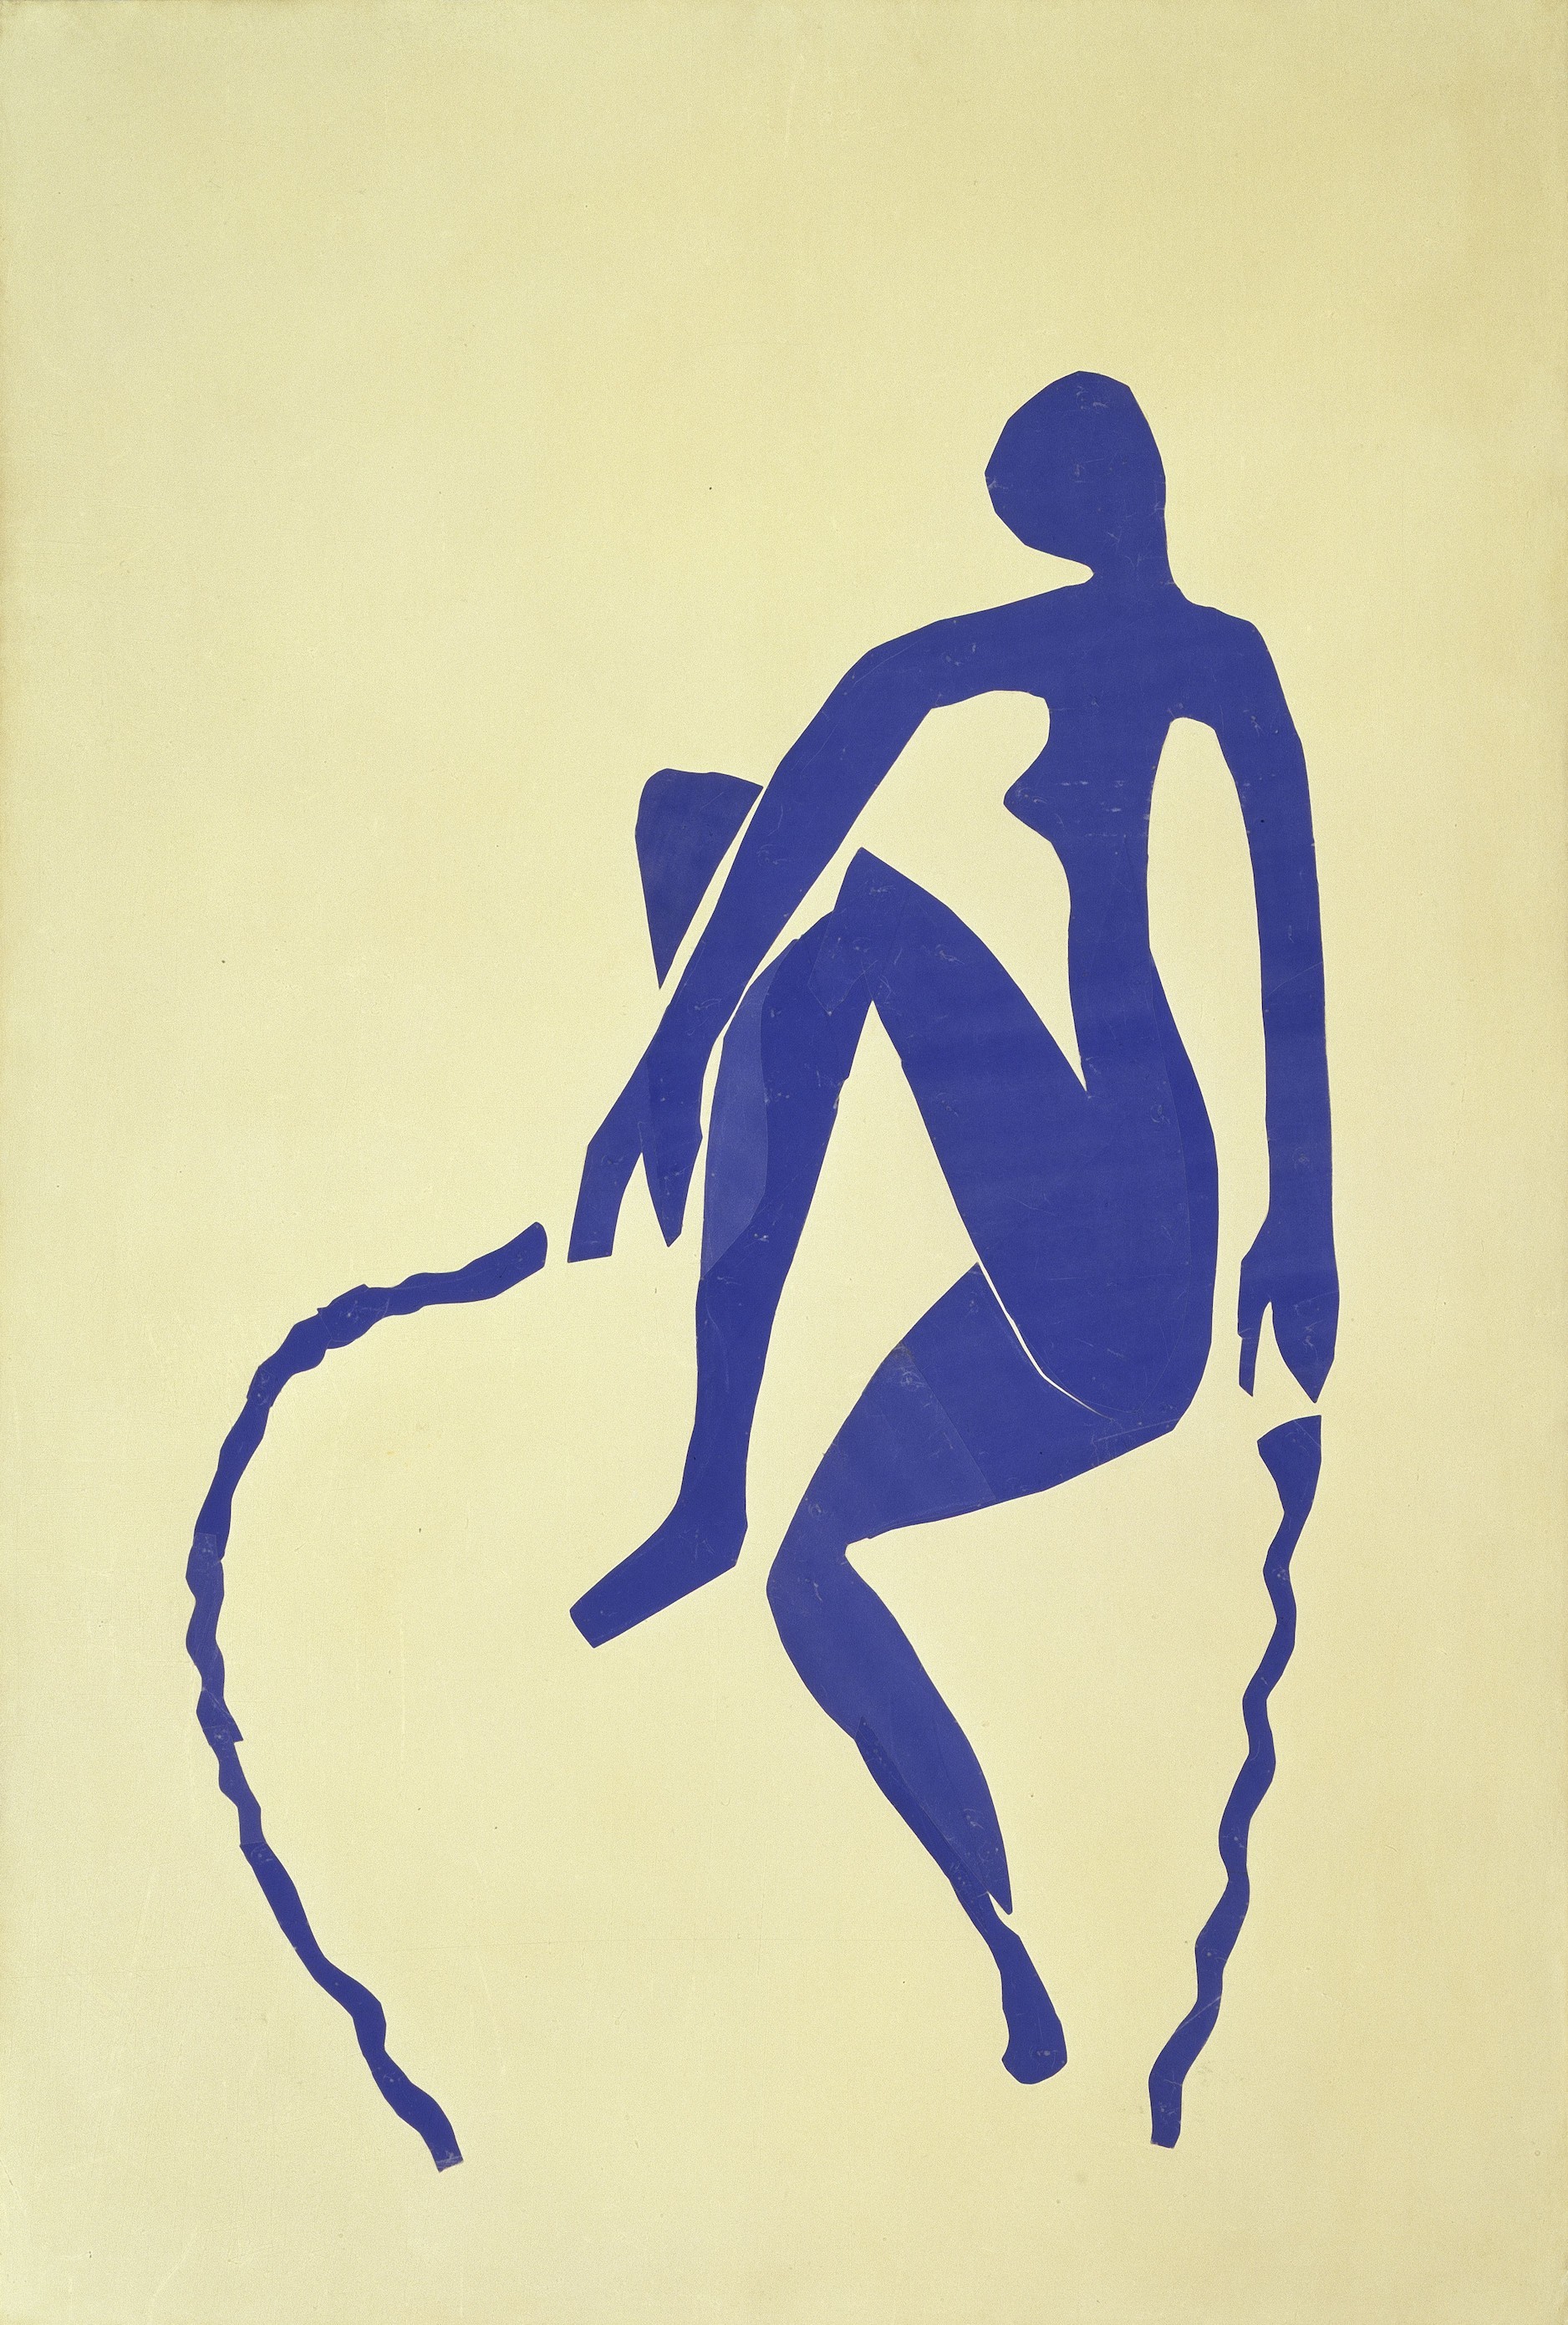 【日本初公開】アンリ・マティス「縄跳びをする⻘い裸婦」1952年 切り紙、 紙の支持体 145 x 98cm  ベルリン国立ベルクグリューン美術館 (C) Museum Berggruen – Nationalgalerie, SMB / bpk / Jens Ziehe